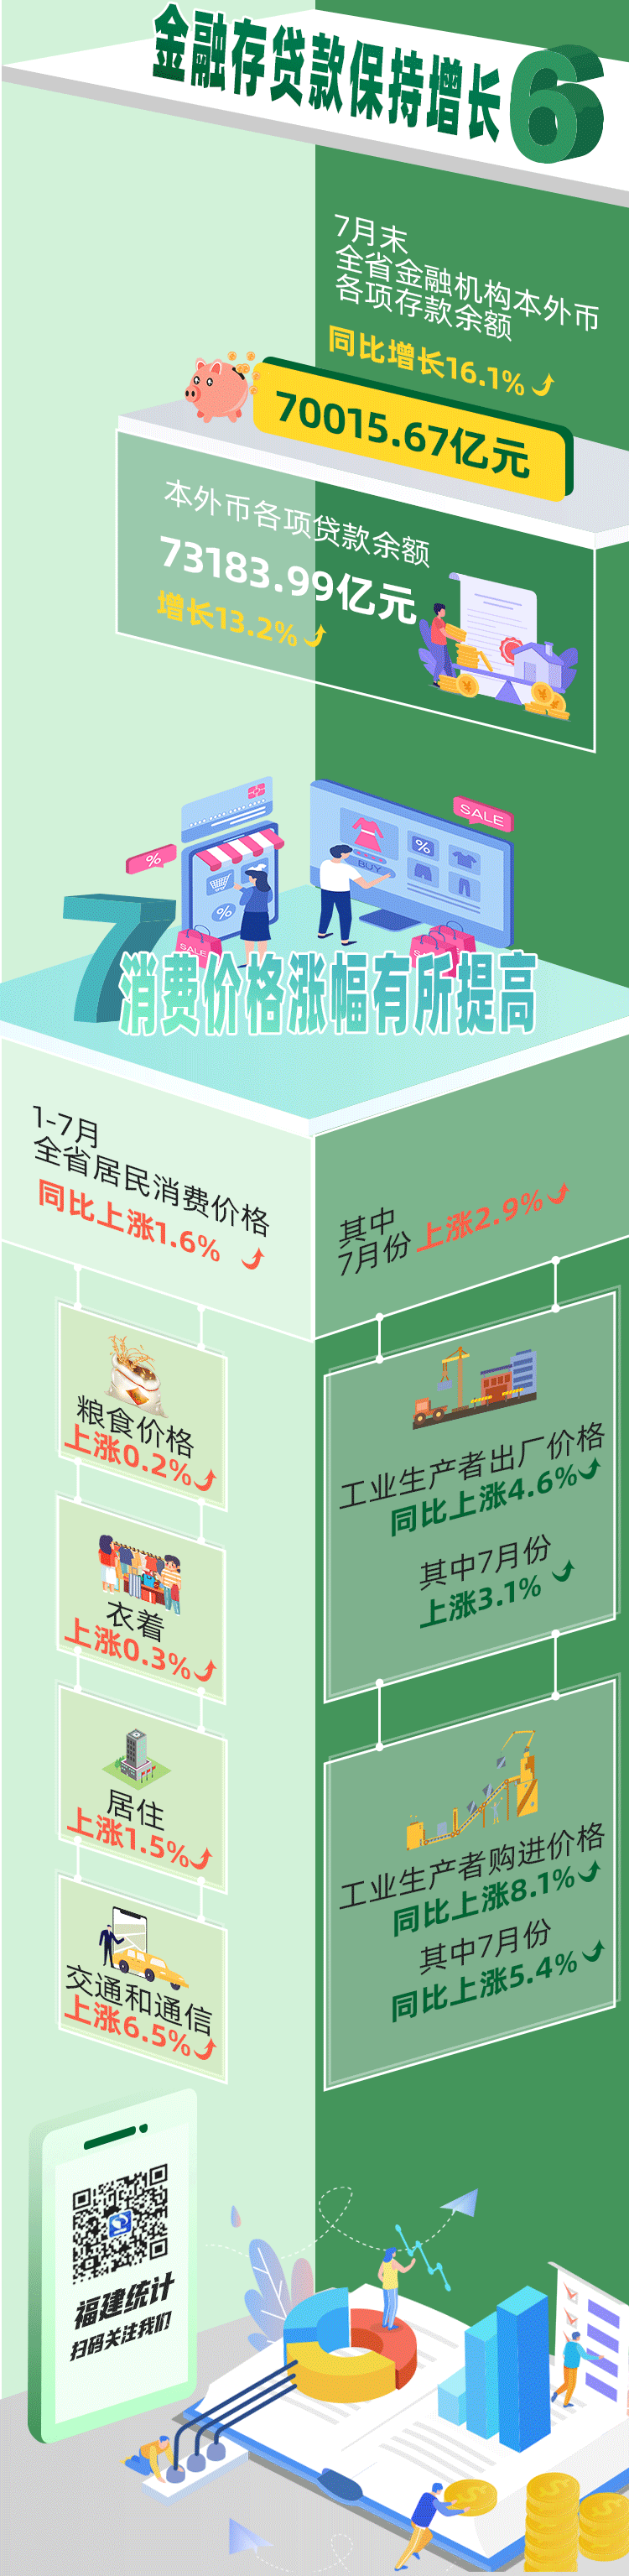 1-7月福建省经济运行情况发布